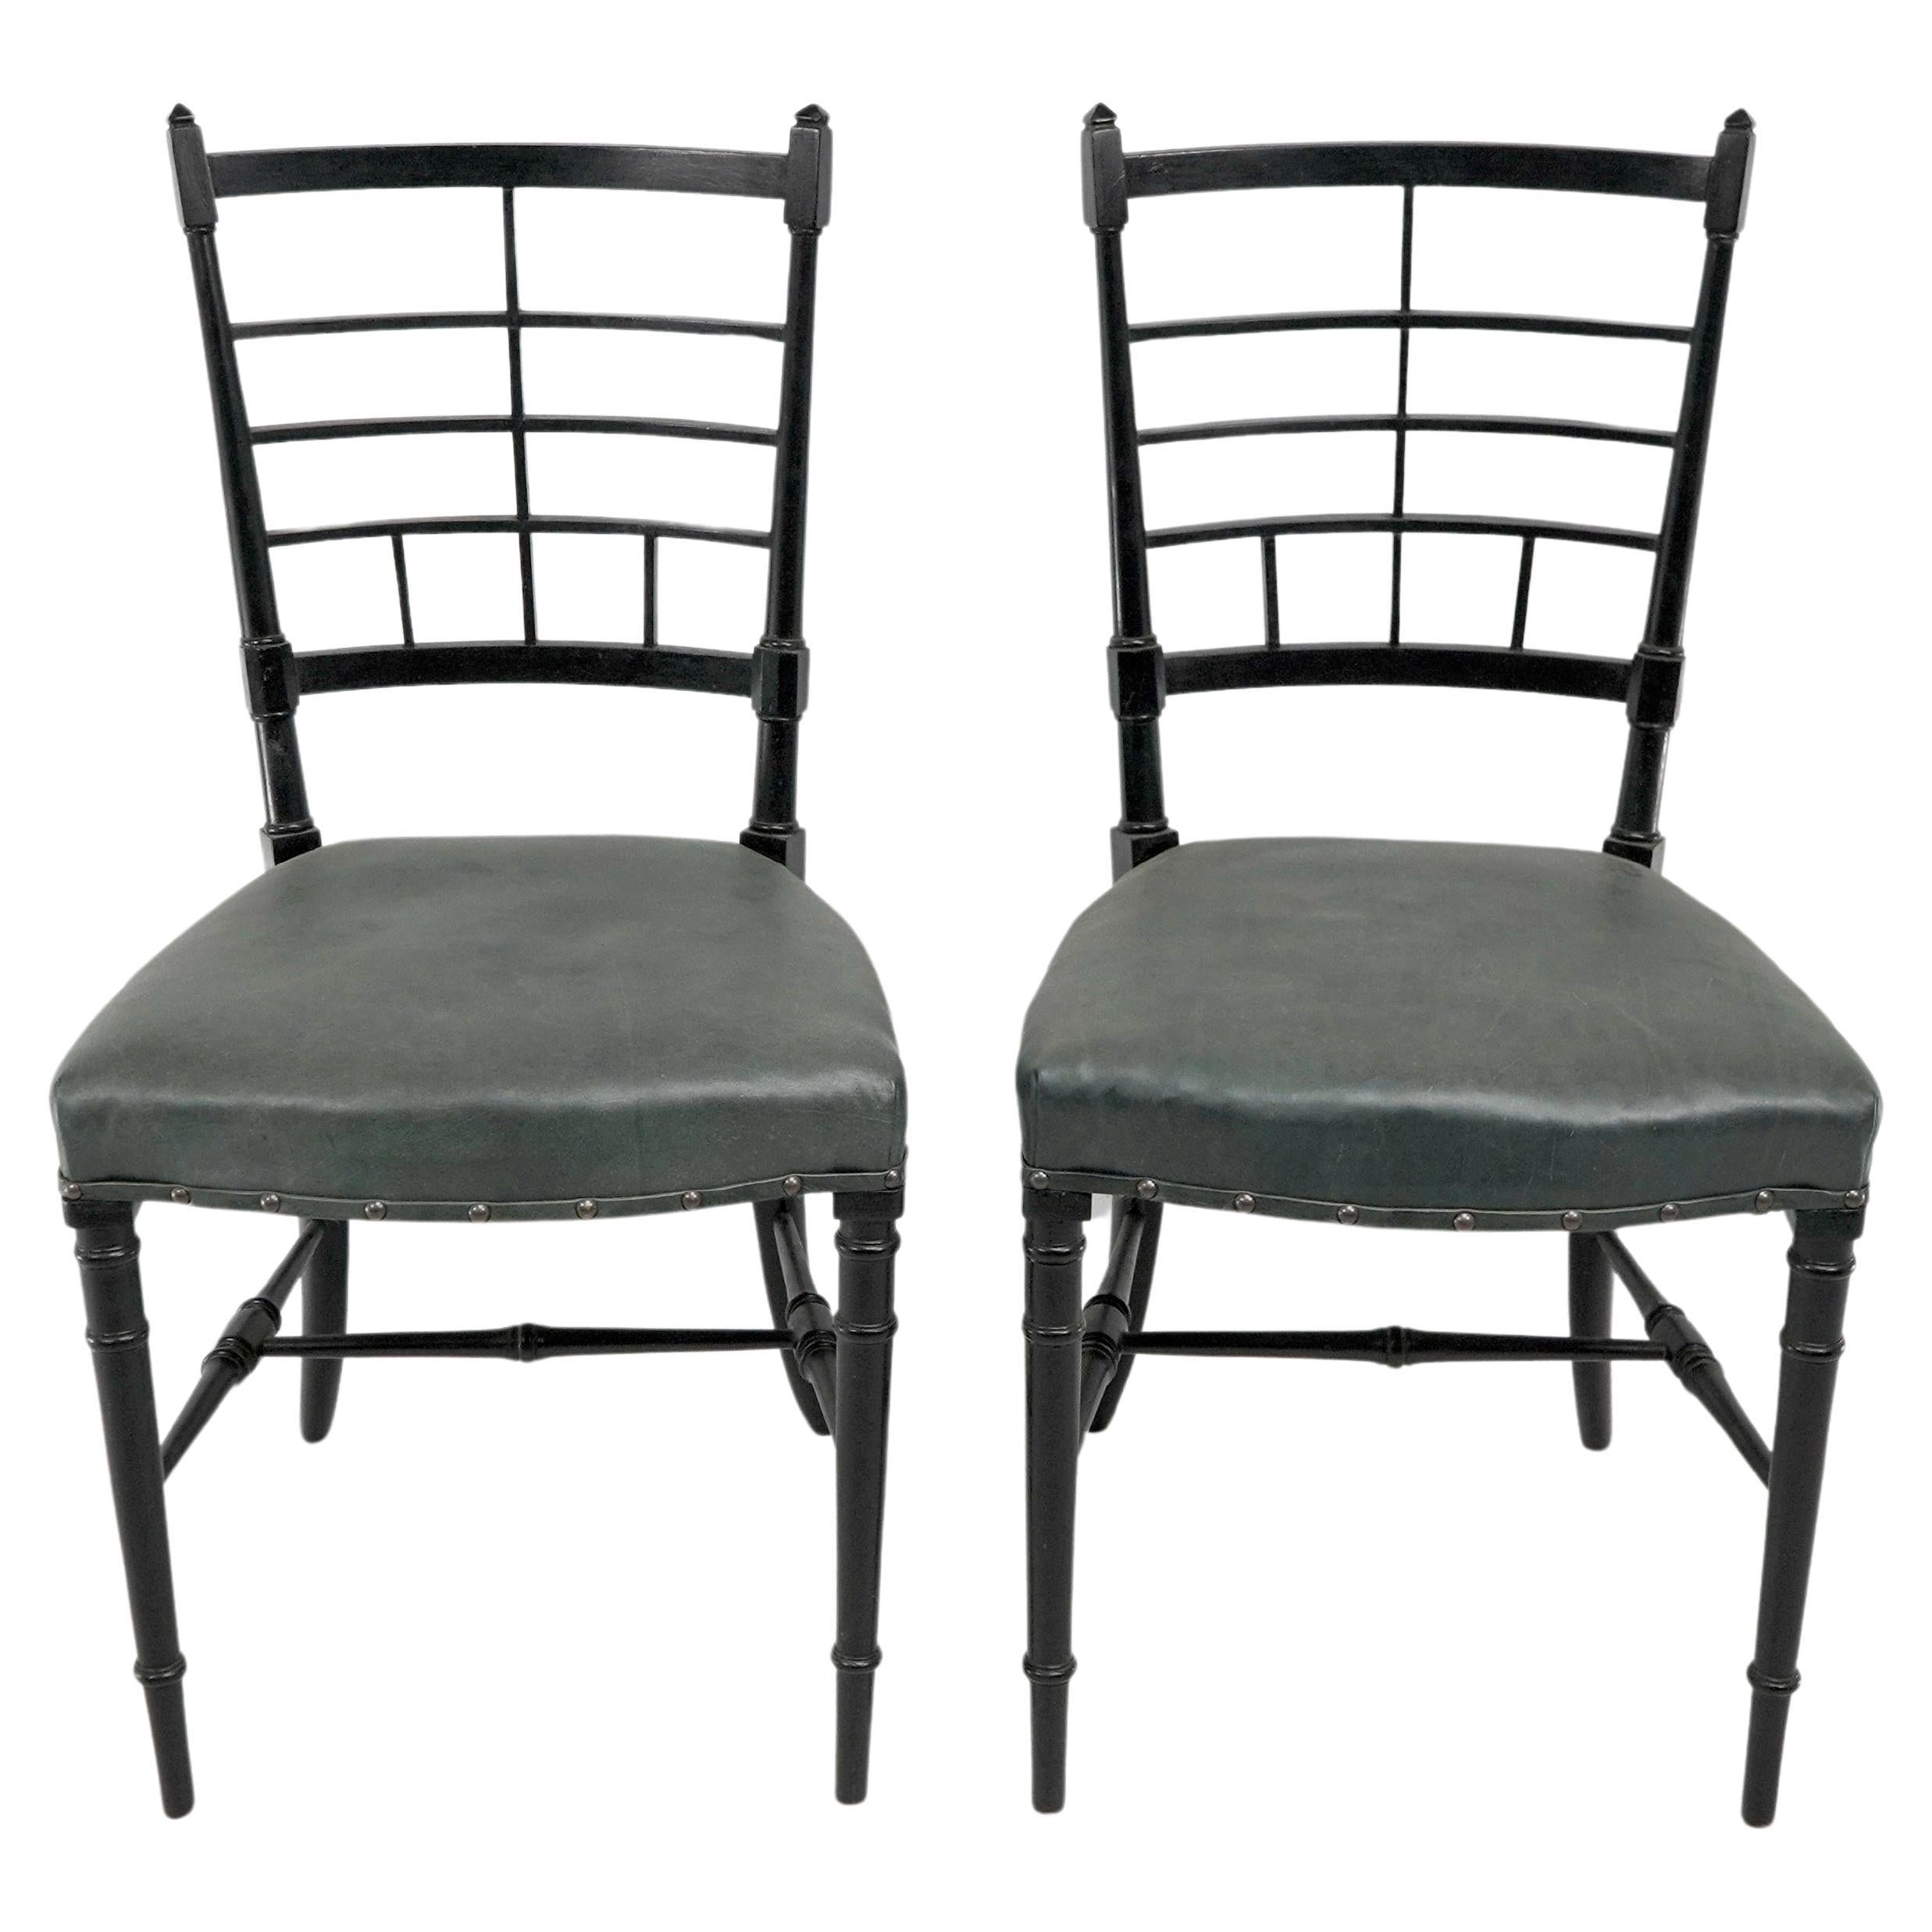 James Plucknett attribué probablement à Collier et Plucknett. Paire de chaises d'appoint anglosaxonnes japonaises ébonisées, recouvertes d'un cuir de qualité.
